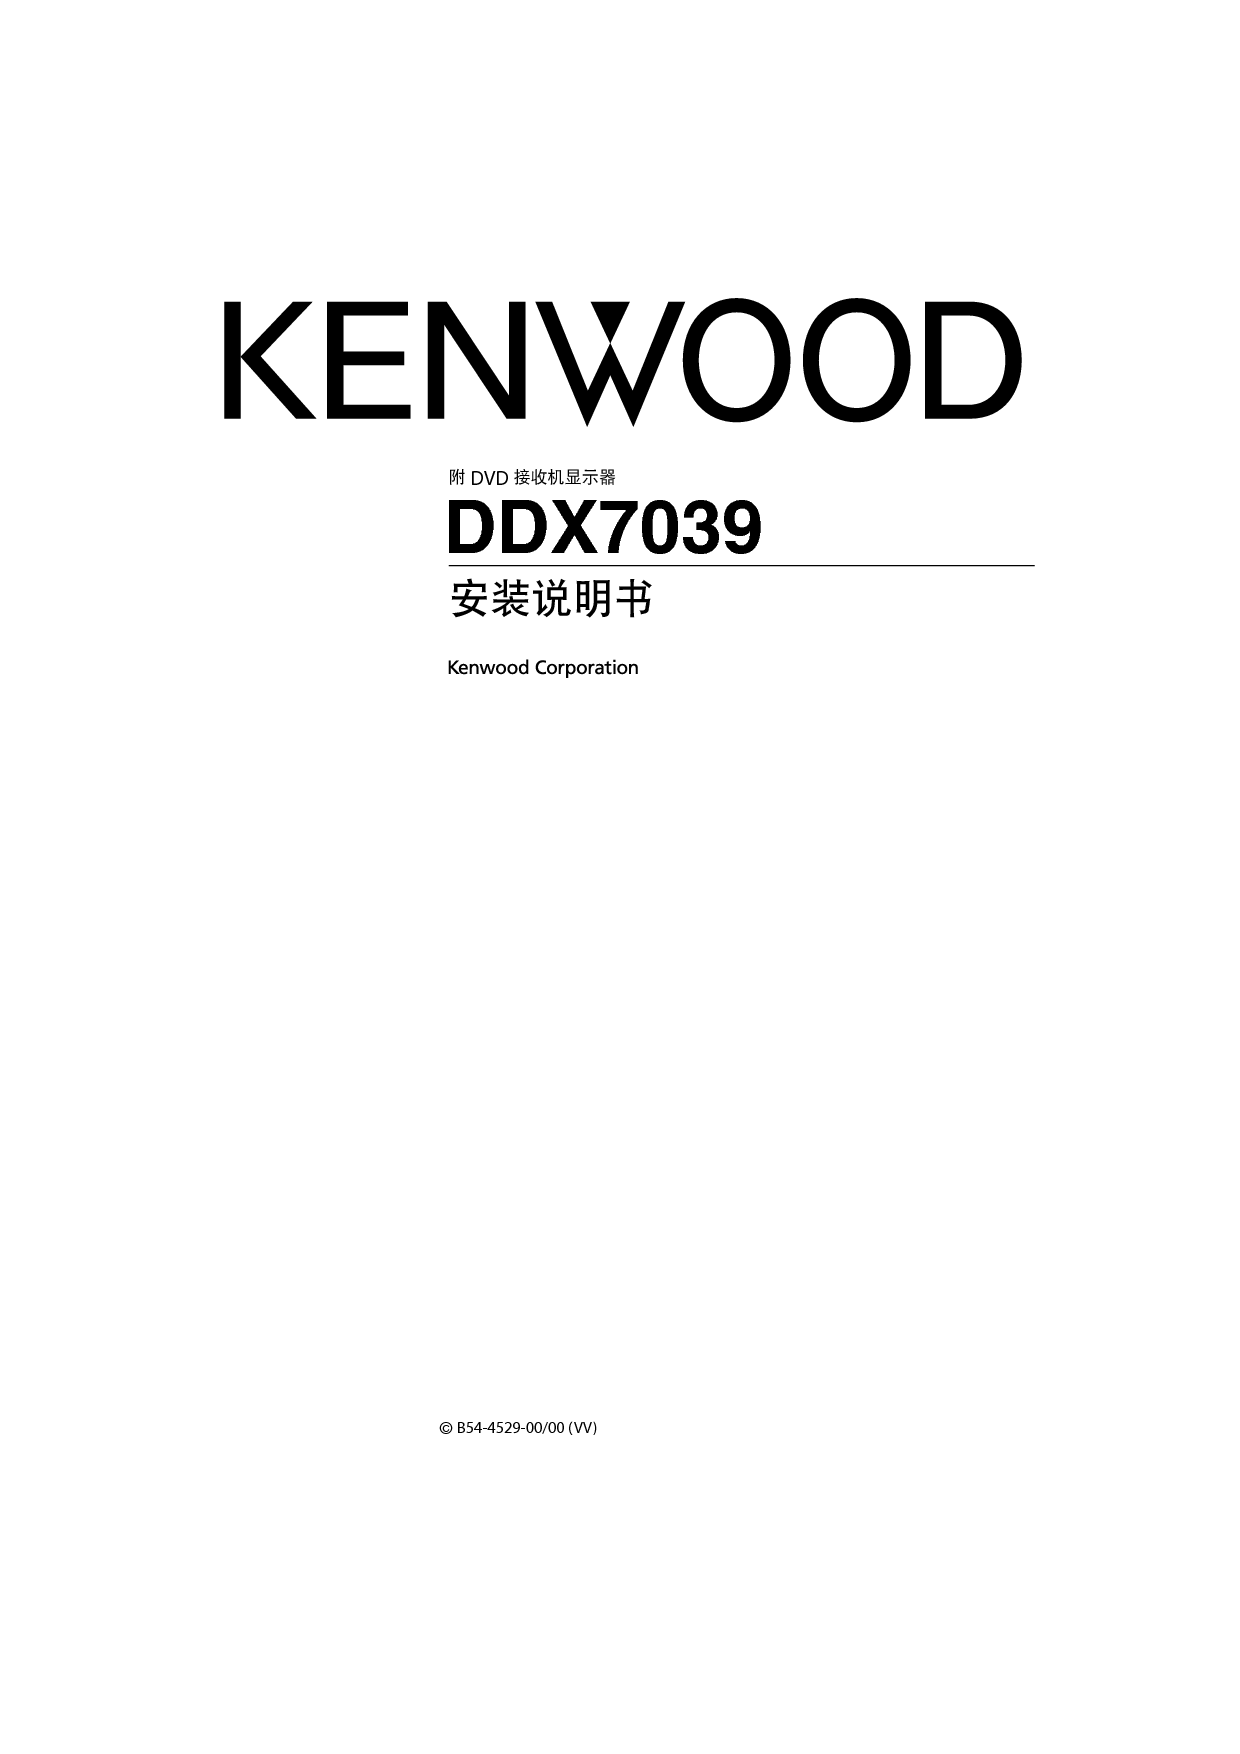 建伍 Kenwood DDX7039 安装说明 封面